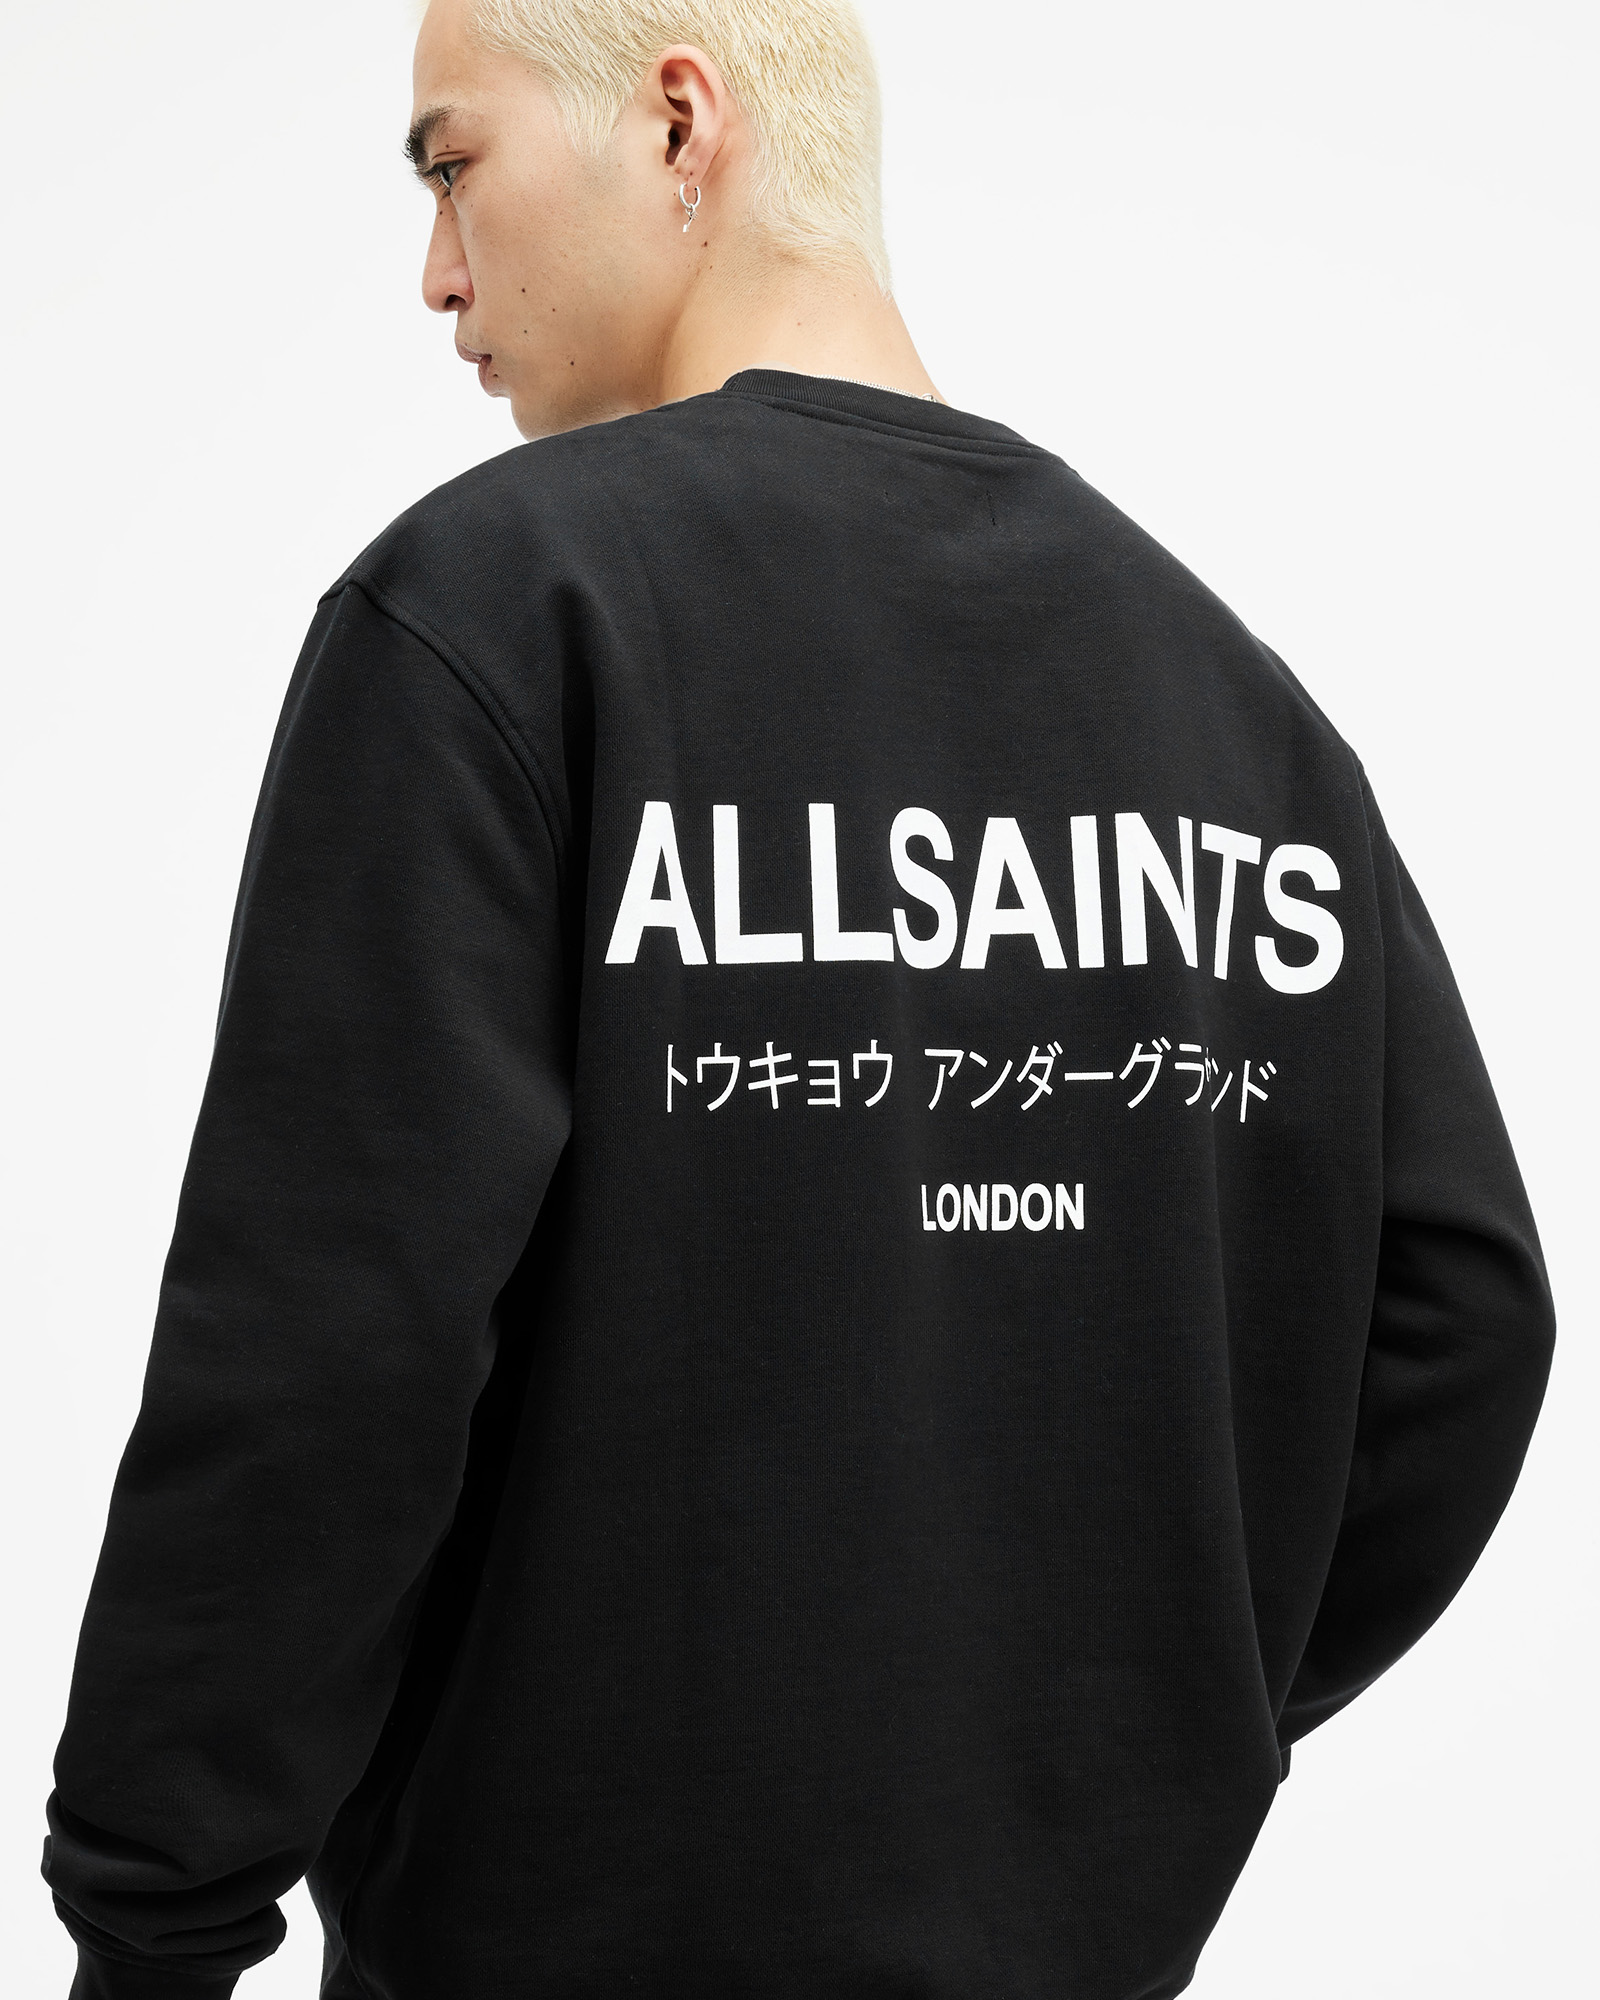 AllSaints Underground Sweatshirt,, Black